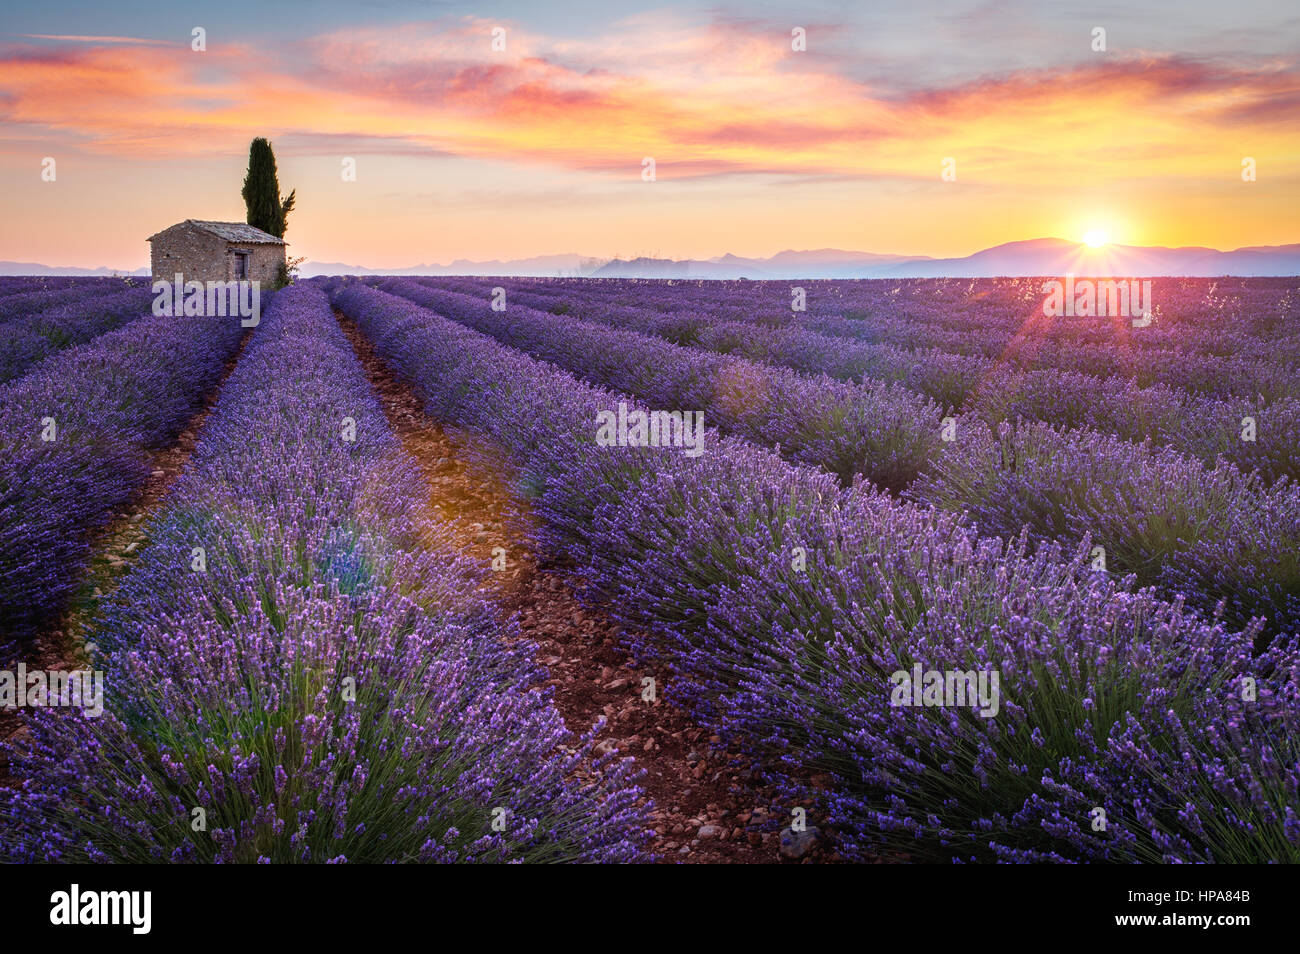 Provence, Plateau de Valensole, France, Europe. Ferme isolée et cyprès dans un champ de lavande en fleurs, le lever du soleil avec la solarisation. Banque D'Images